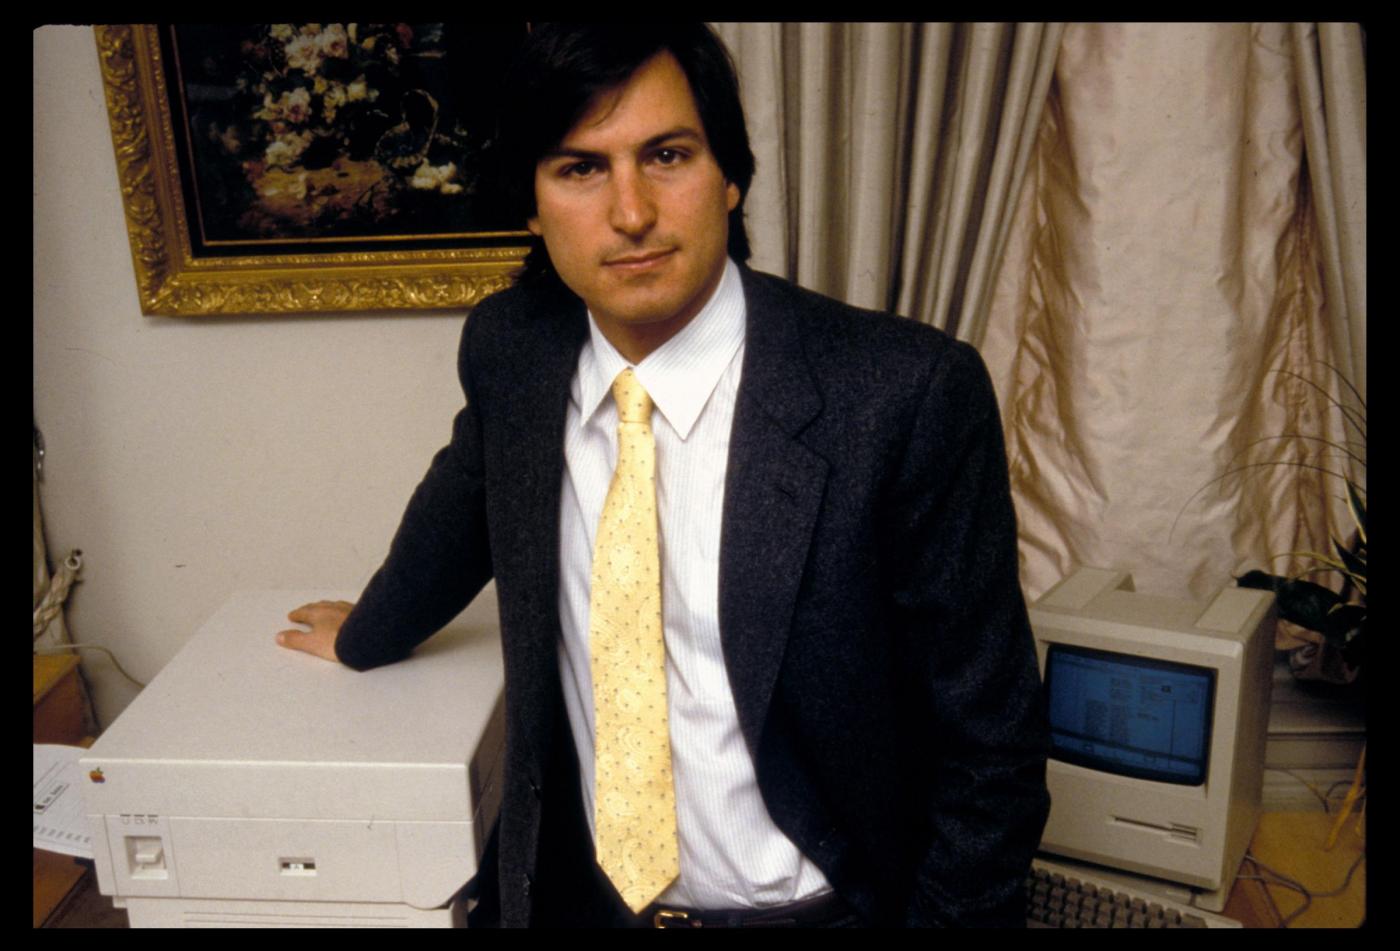 CEO Steve Jobs